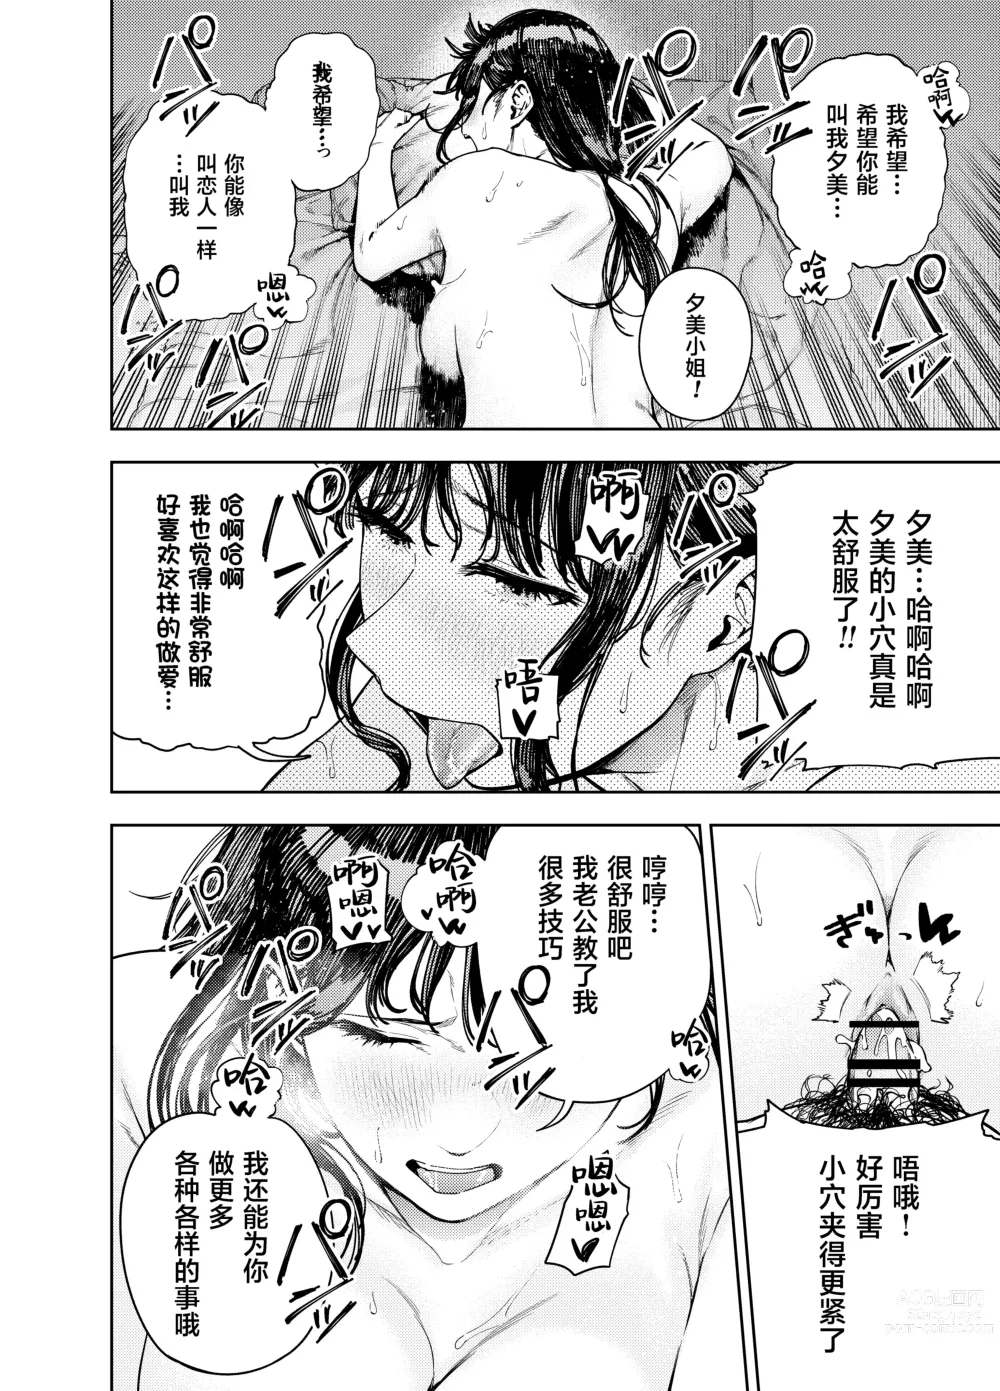 Page 43 of doujinshi Chounai Furin ~Yumi~